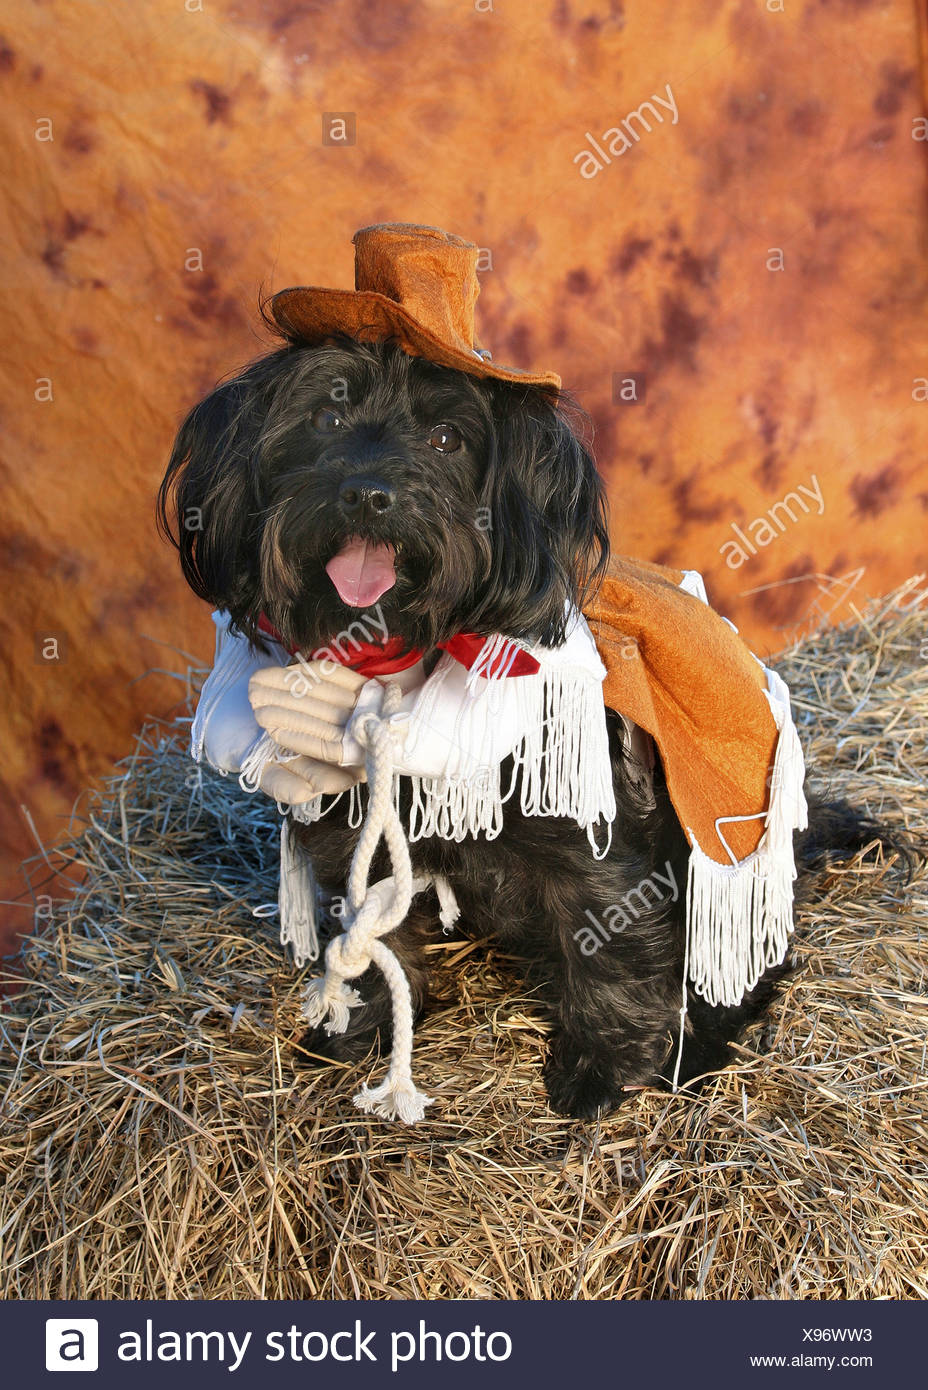 large dog cowboy costume